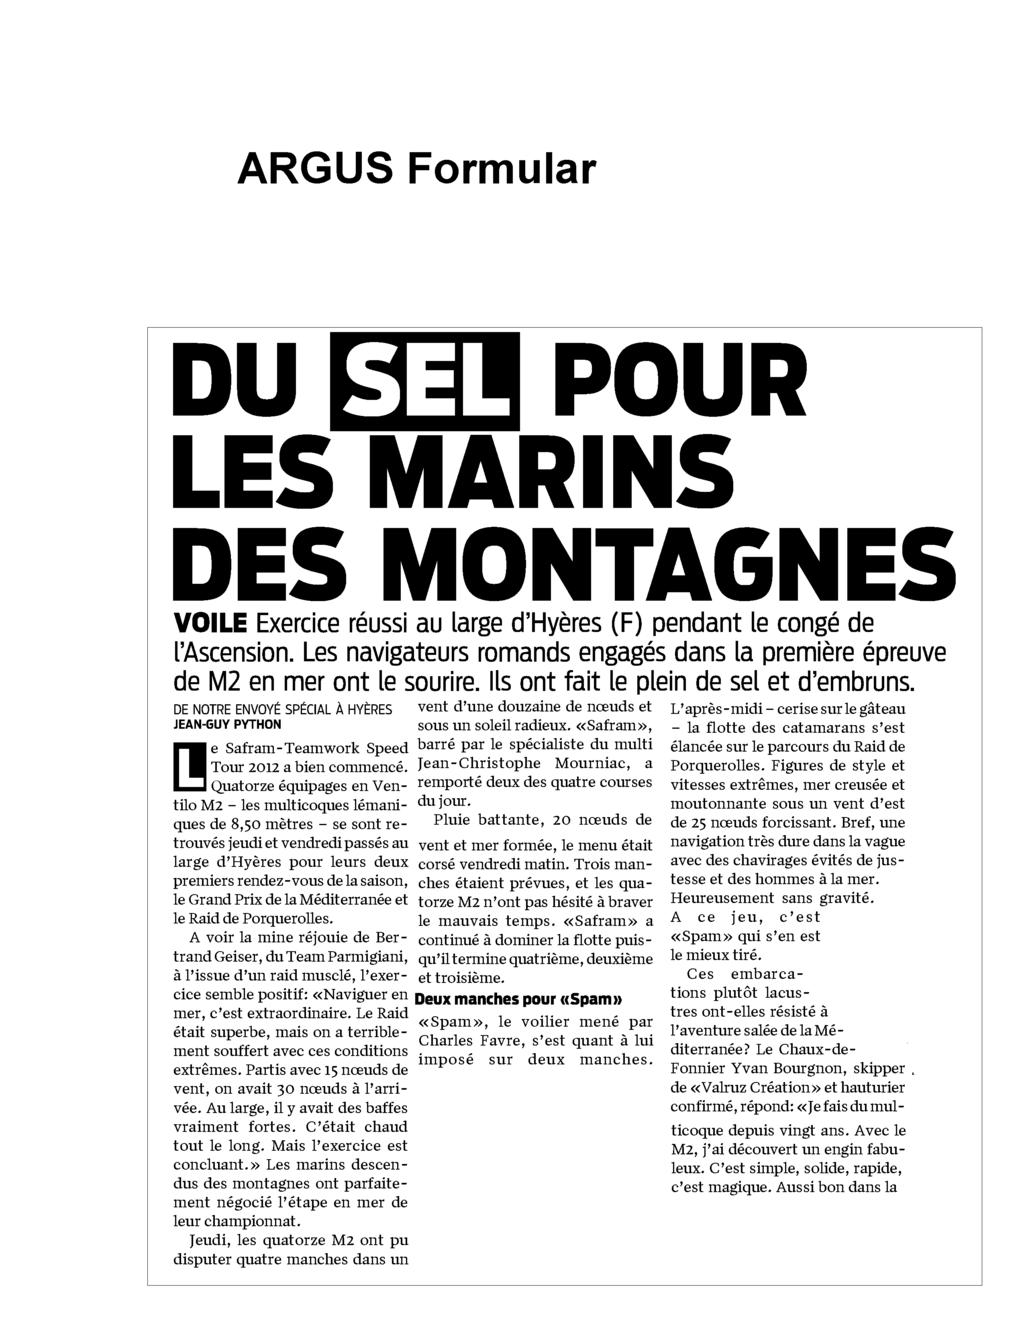 Le Matin 22.05.2012 Seite 1 / 2 Auflage/ Seite 61345 / 27 6064 Ausgaben 350 / J.